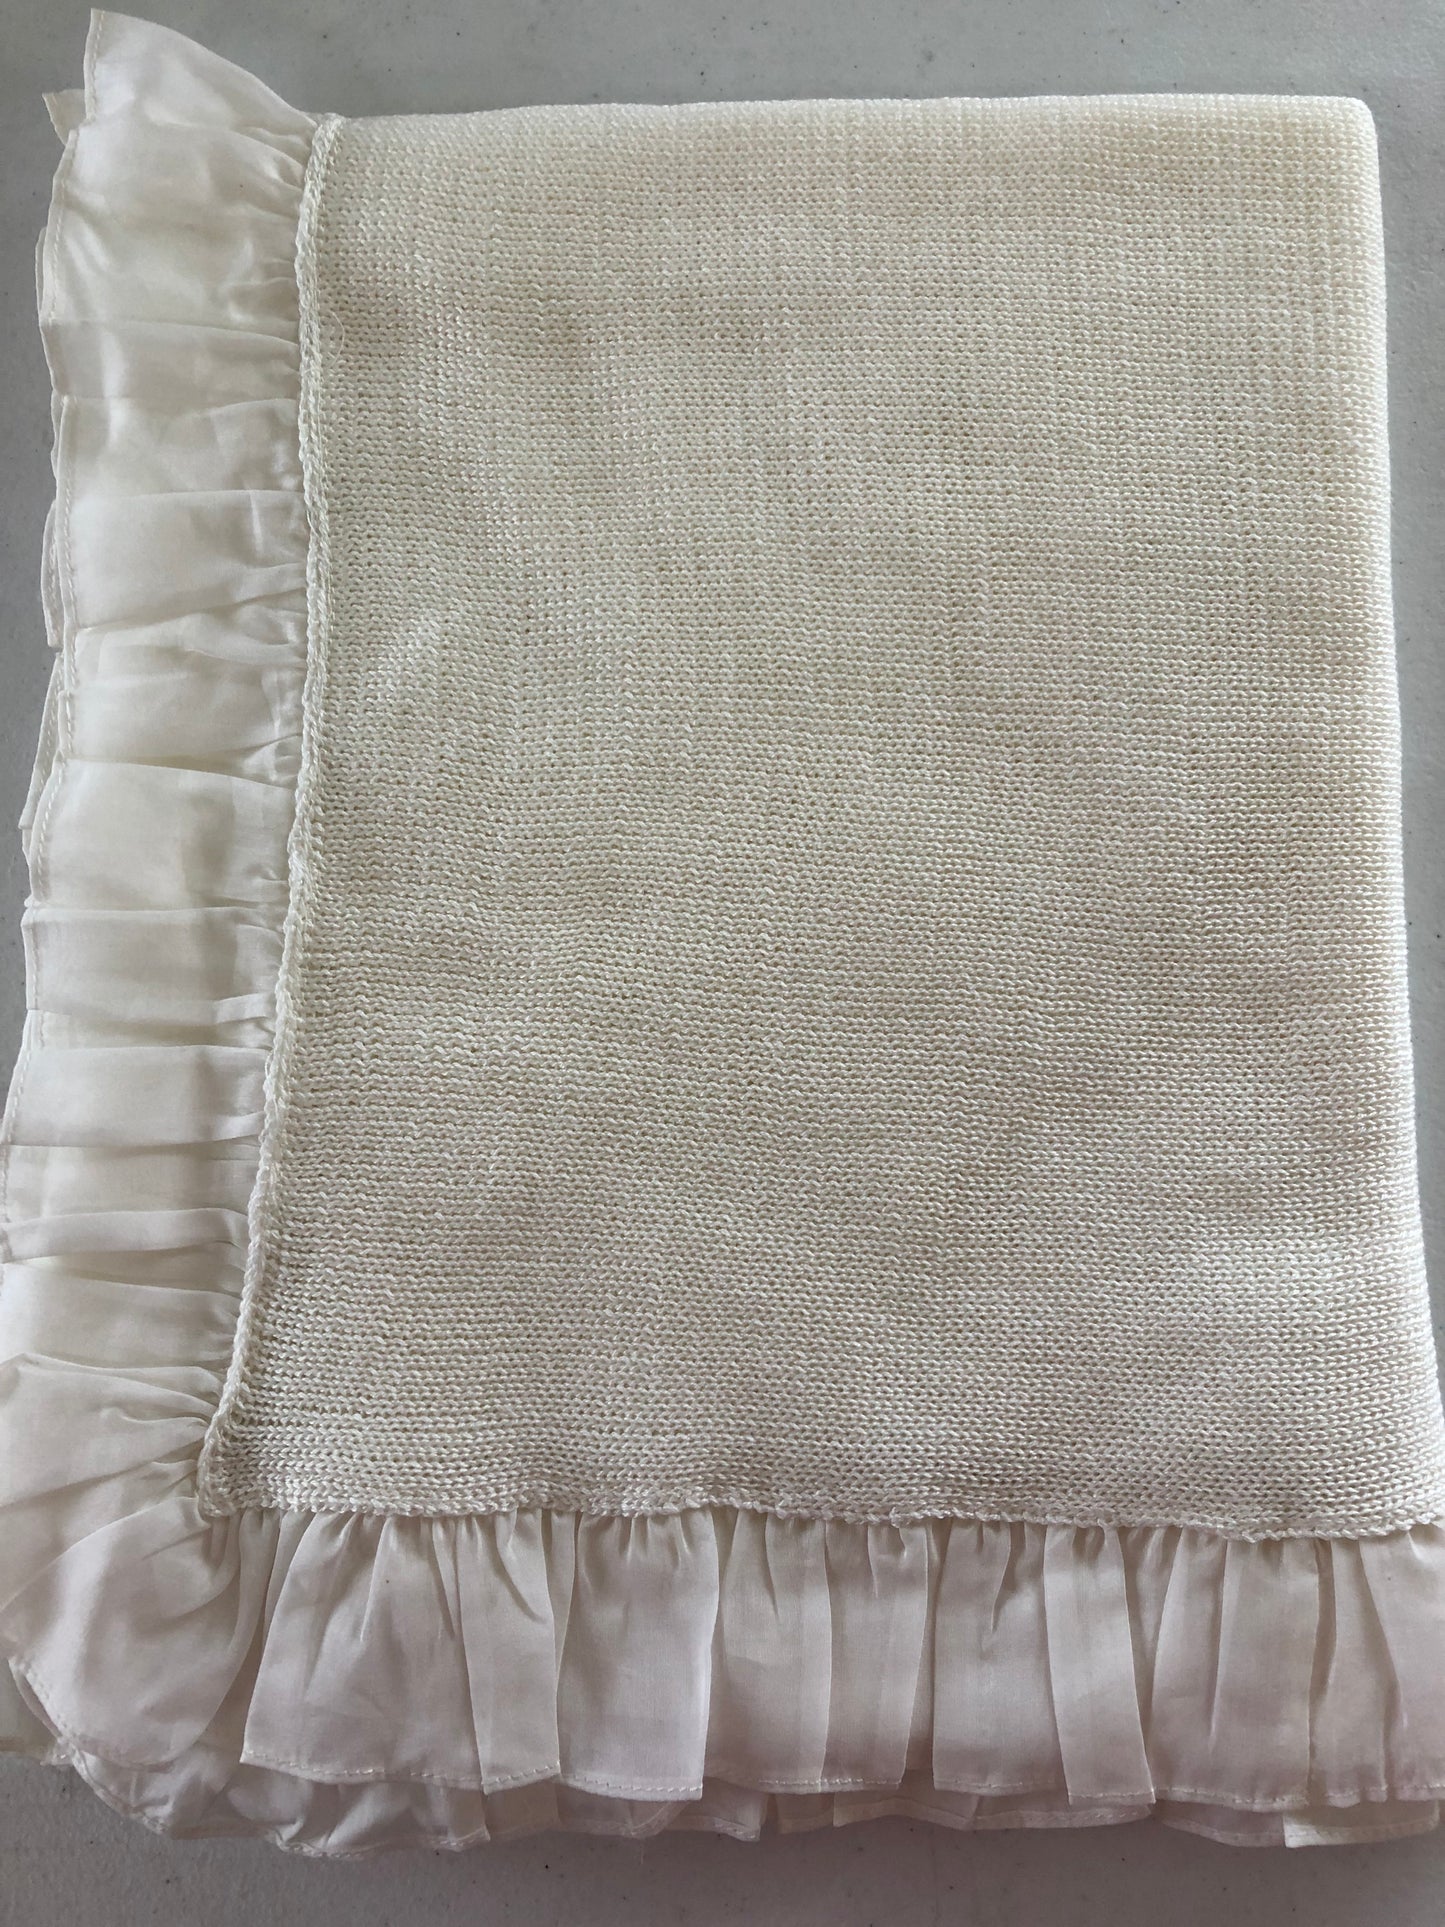 Ivory Knit Blanket